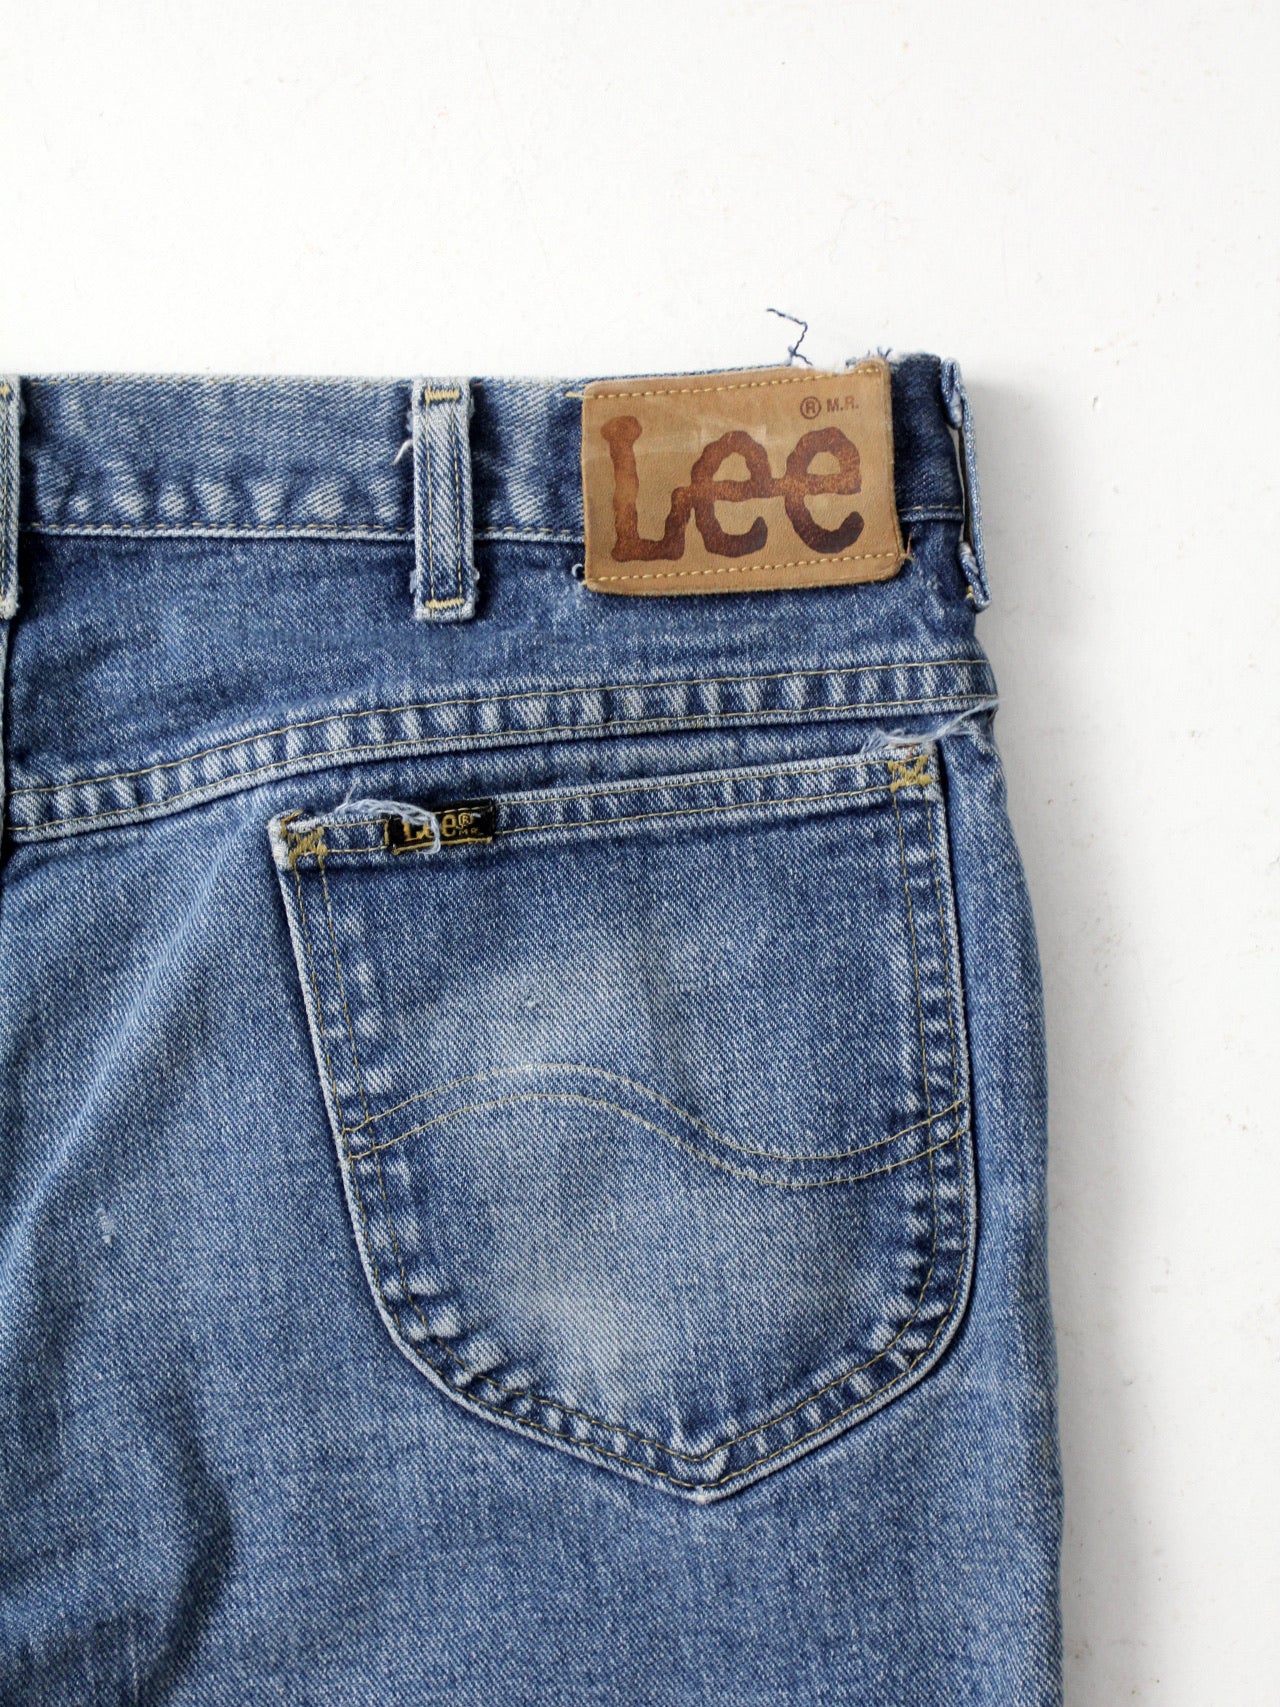 Lee Jeans Rider Worn Blue